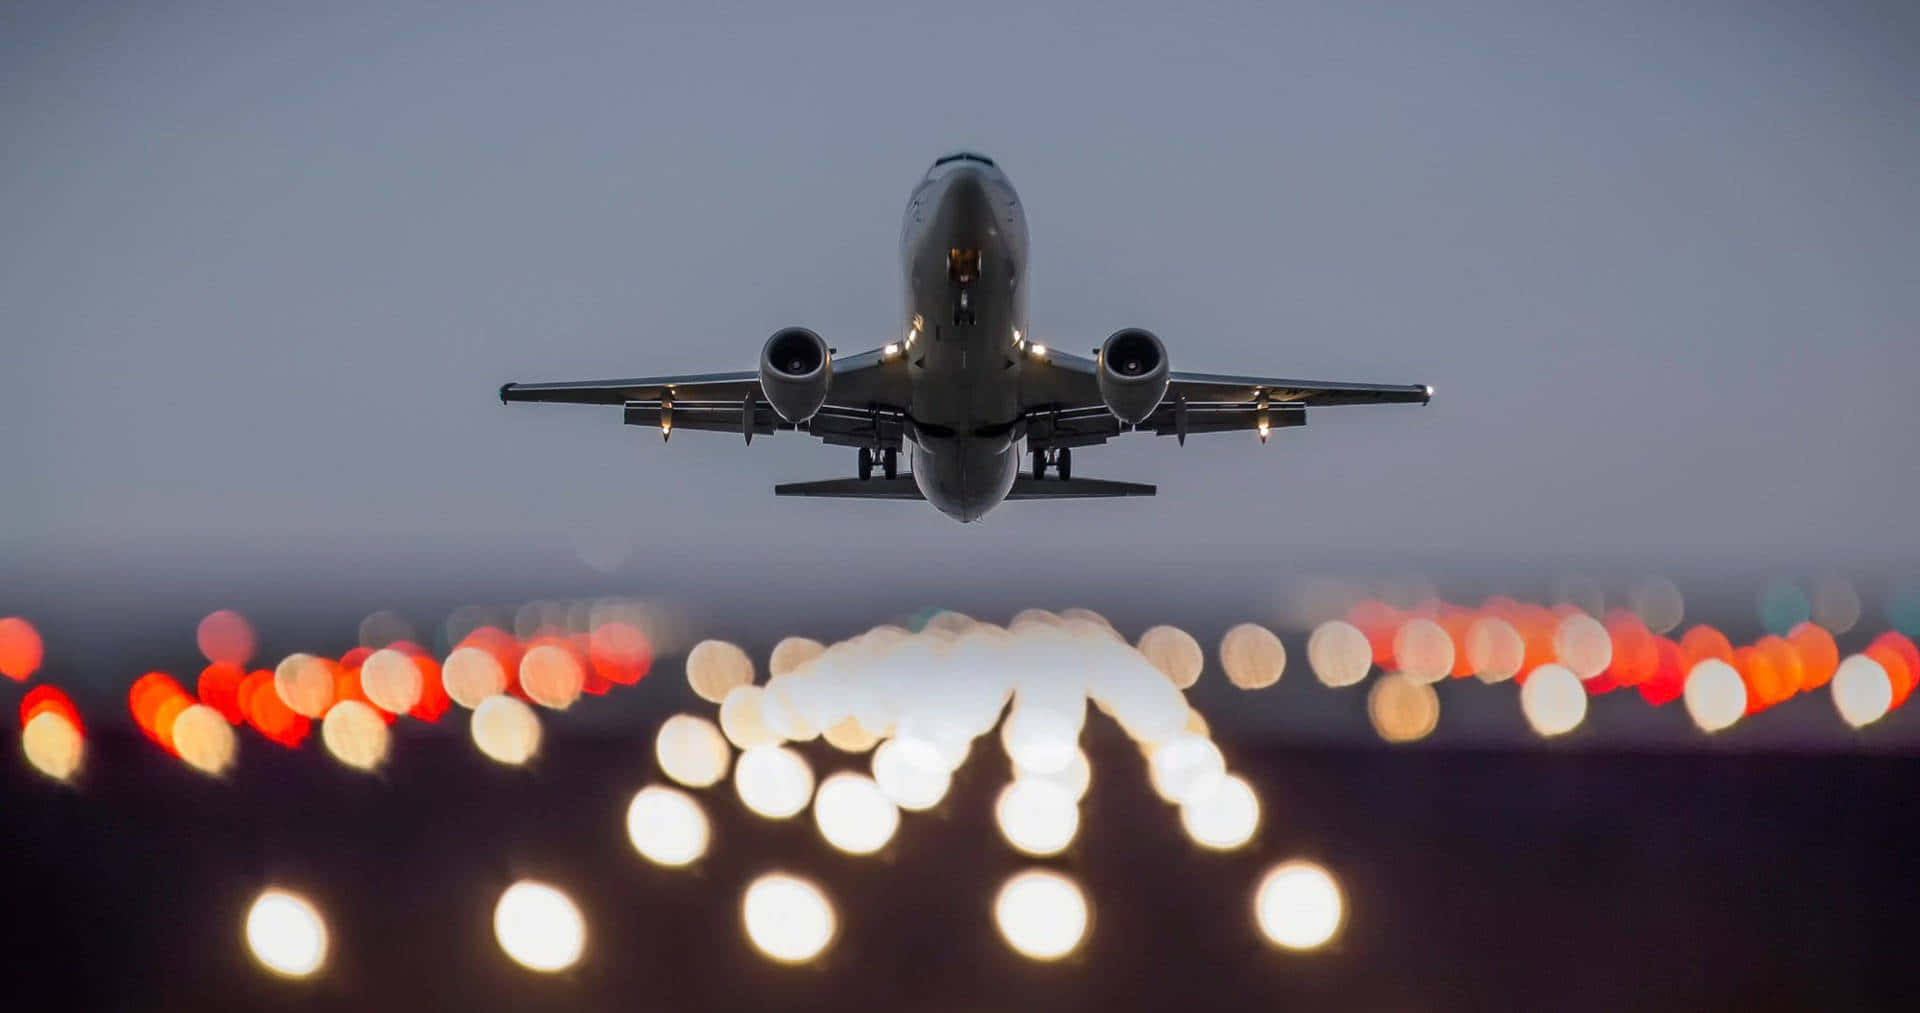 Flughafensanft Verblassendes Licht Flugzeugabflug Wallpaper